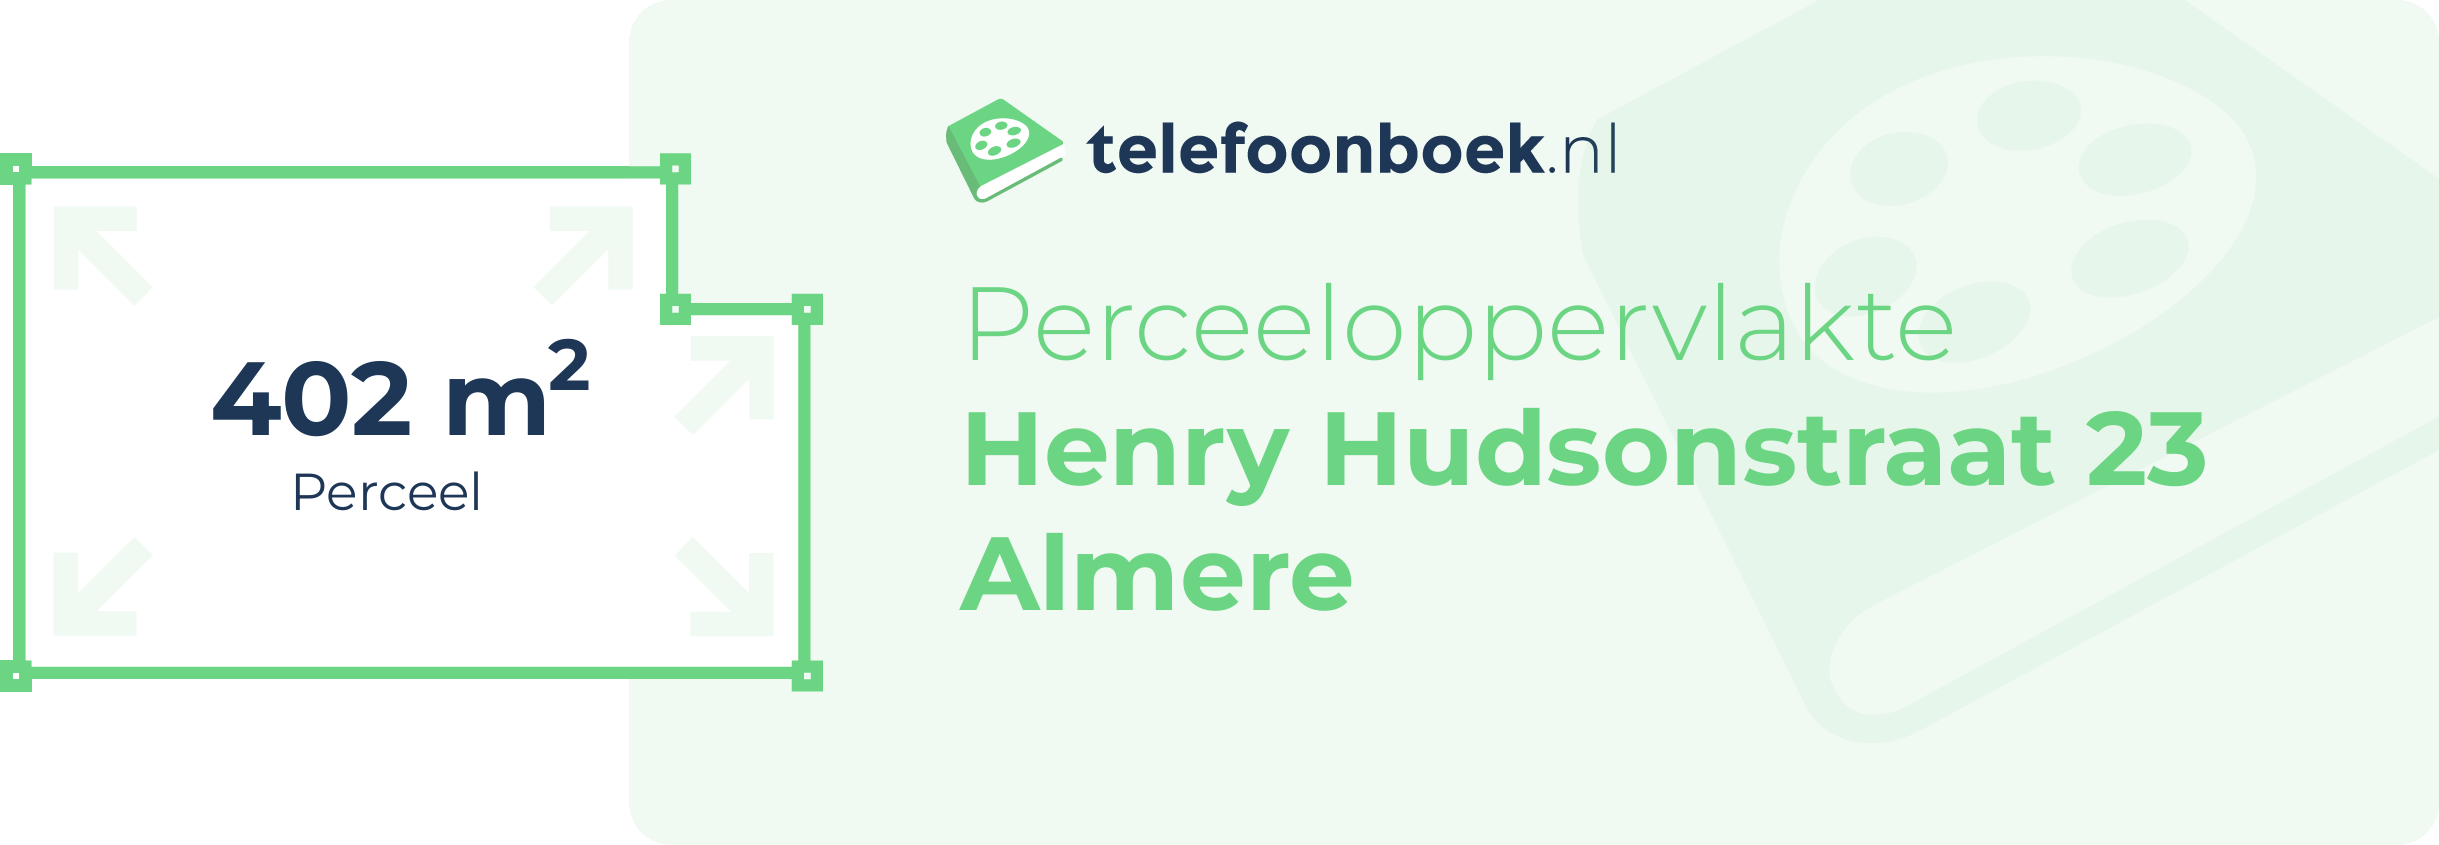 Perceeloppervlakte Henry Hudsonstraat 23 Almere